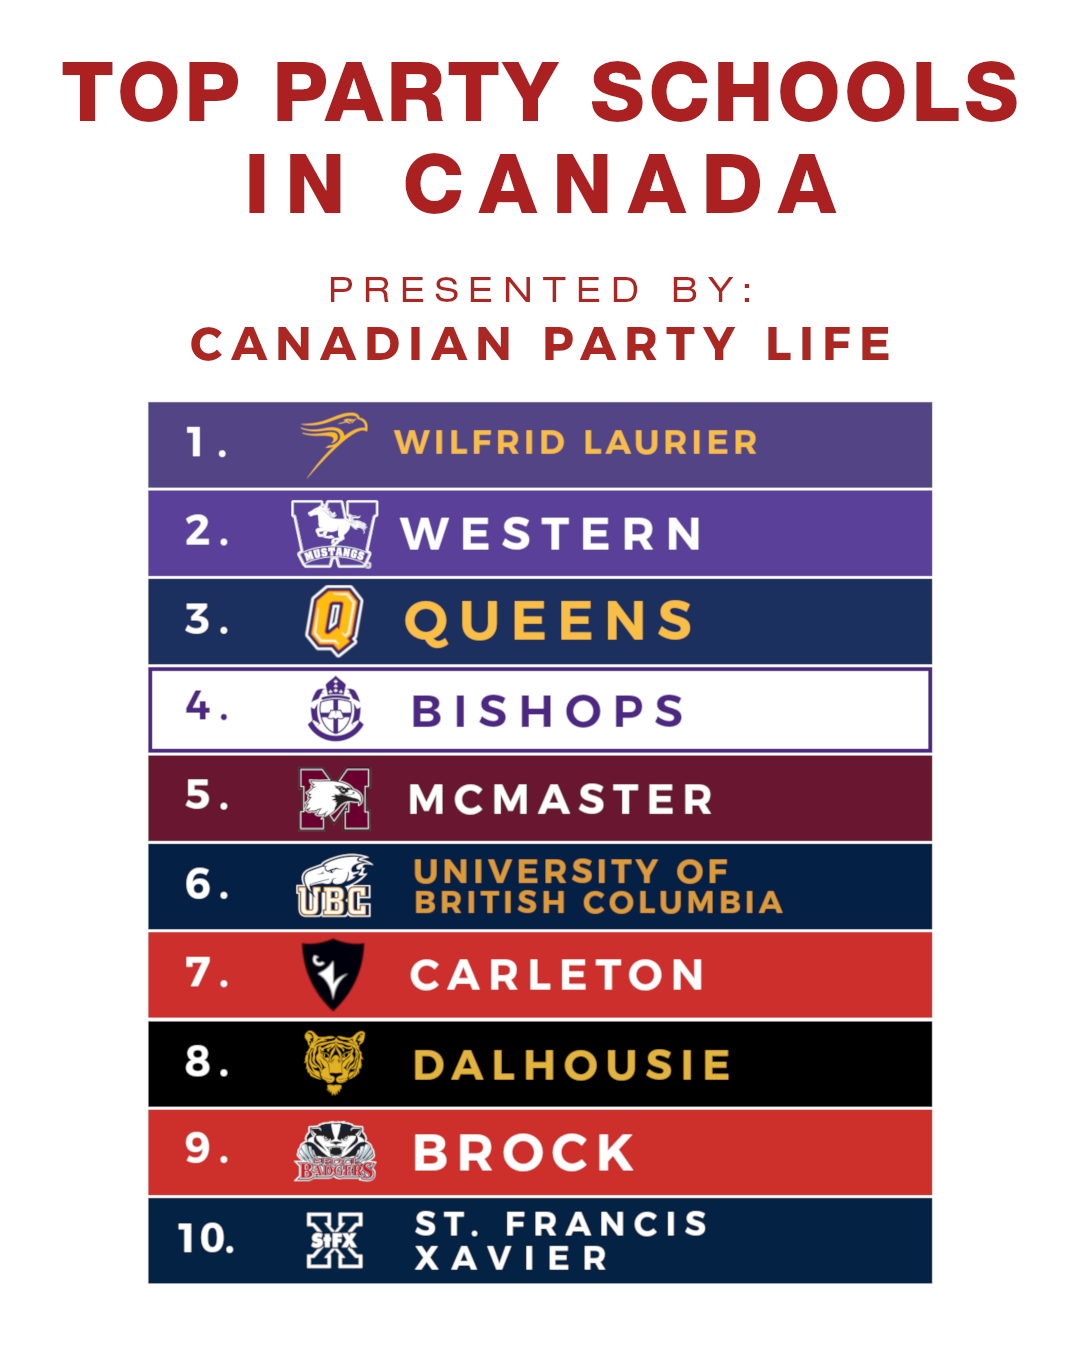 Top Party Schools in Canada (2020 Edition)